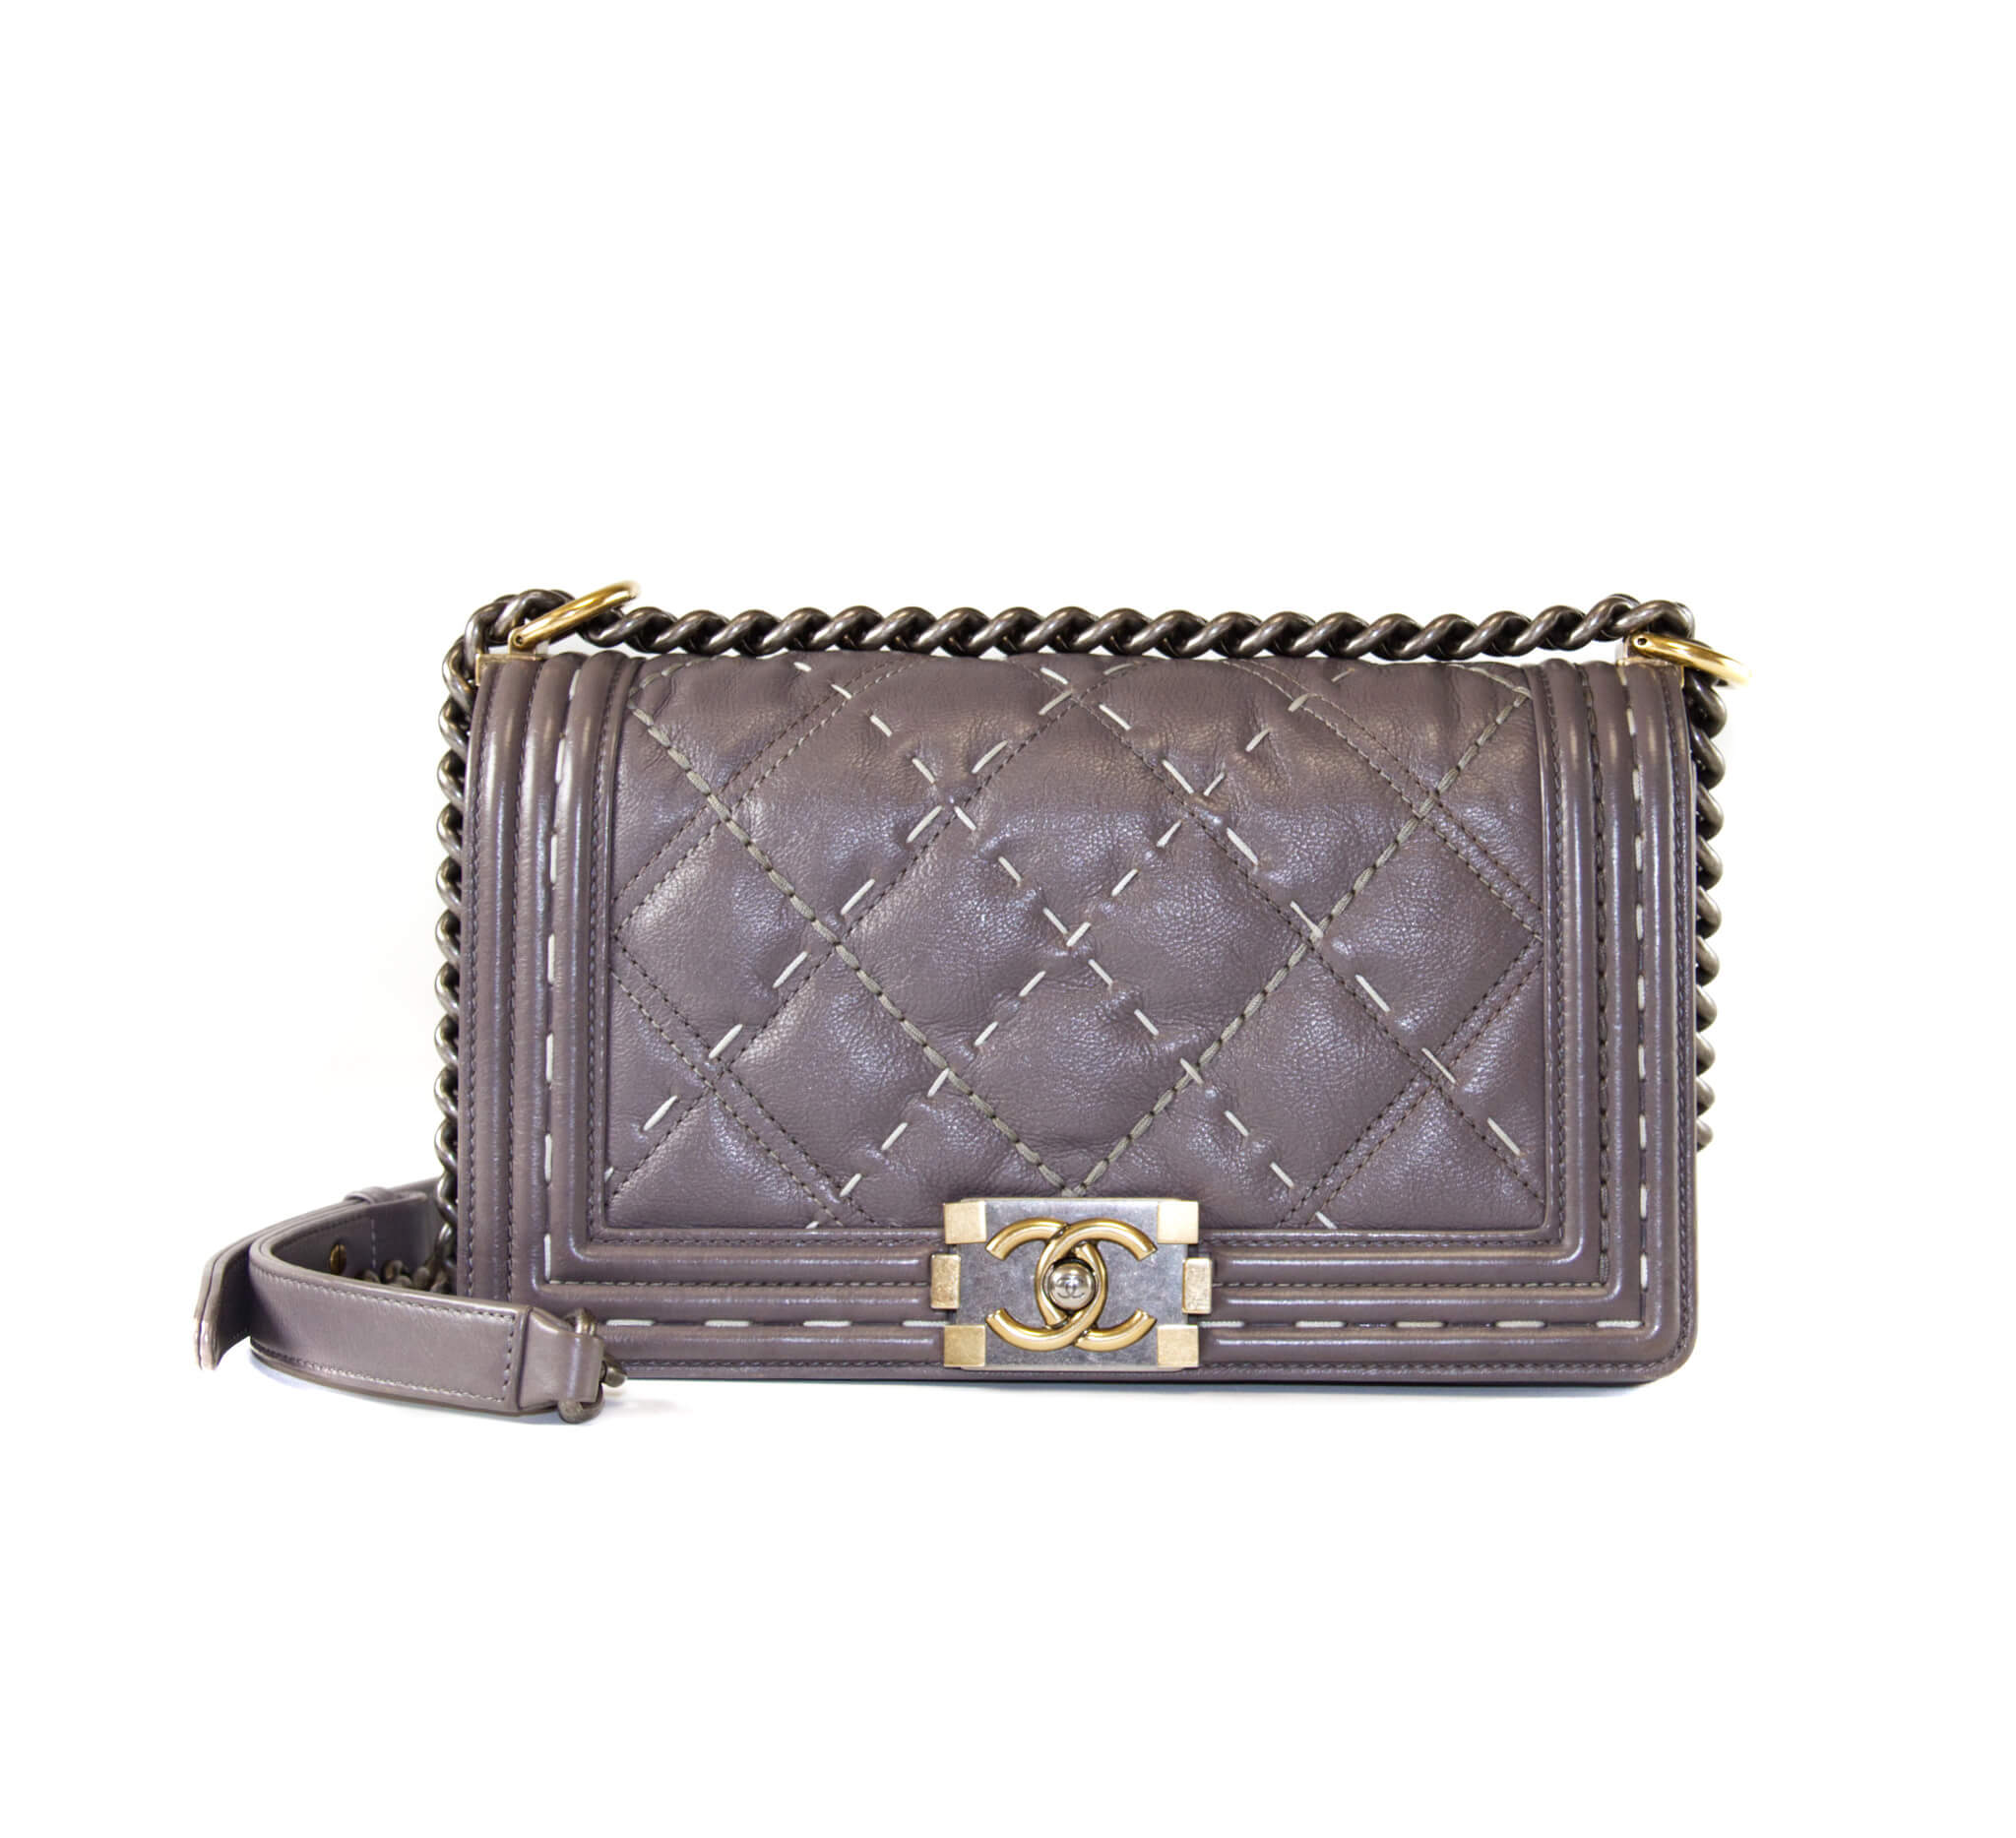 Chanel Boy Bag Quilted Grey Stitching in Medium - Handbag Spa & Shop